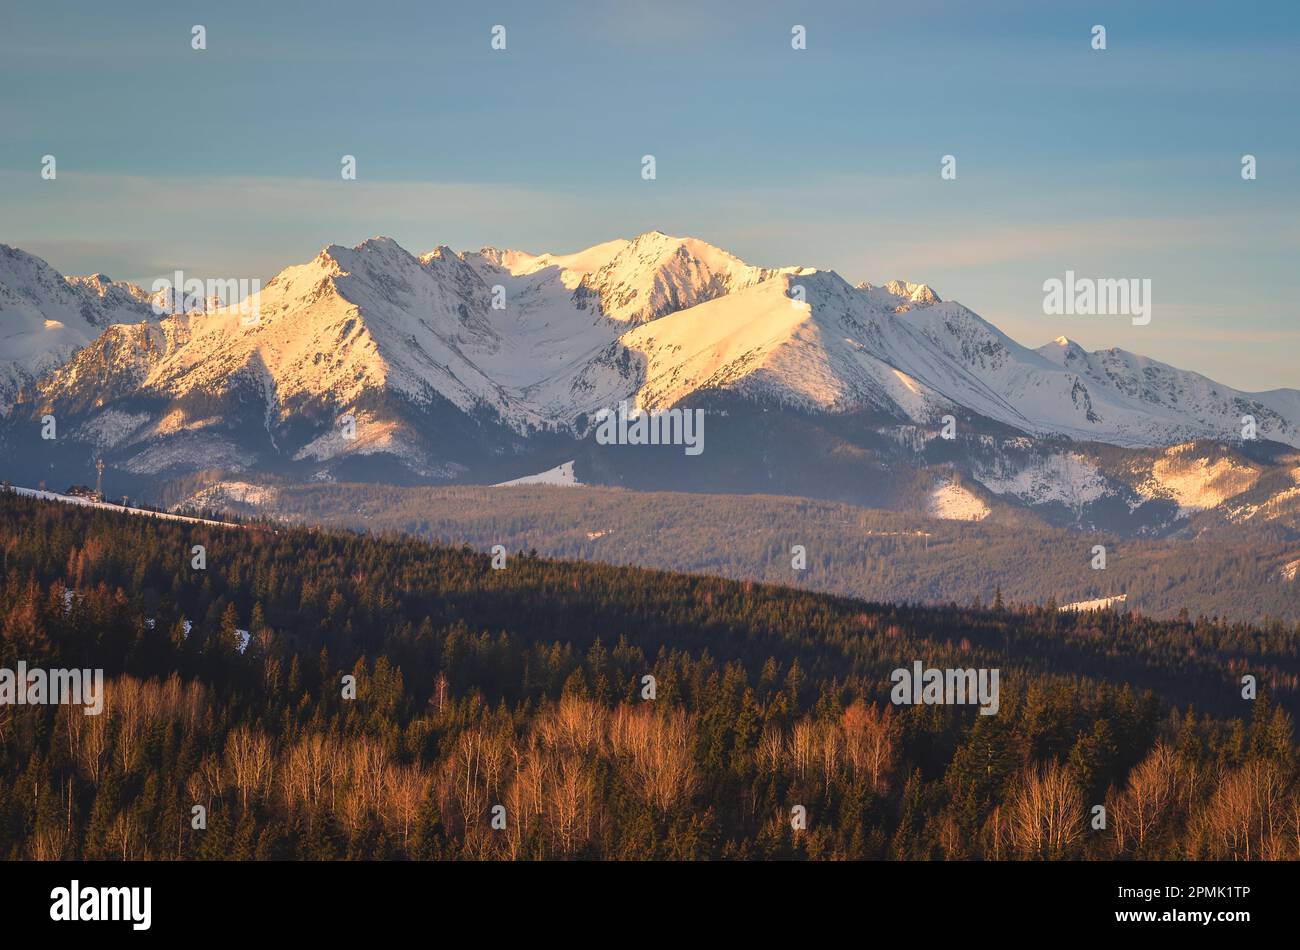 Bezauberndes Panorama der polnischen Tatra am Morgen. Blick auf die westliche Tatra vom Dorf Lapszanka, Polen. Stockfoto